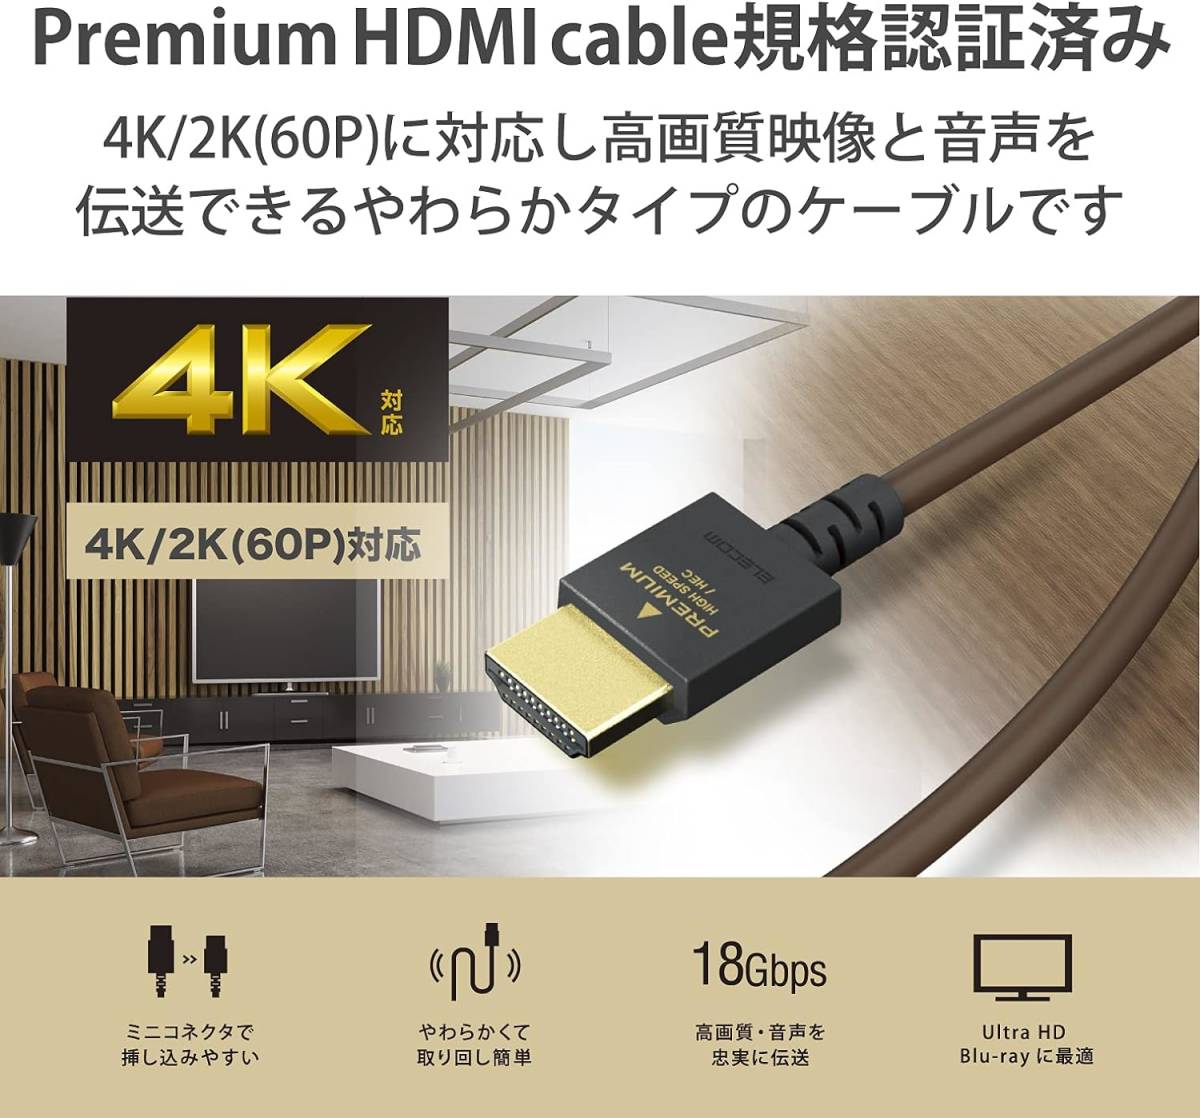 送料無料★価格￥4,356 新品未開封品 エレコム(ELECOM)18Gbpsの高速伝送 プレミアム4K(60P)HDR対応 Premium HDMI 規格認証品 ケーブル 1.5m_画像3